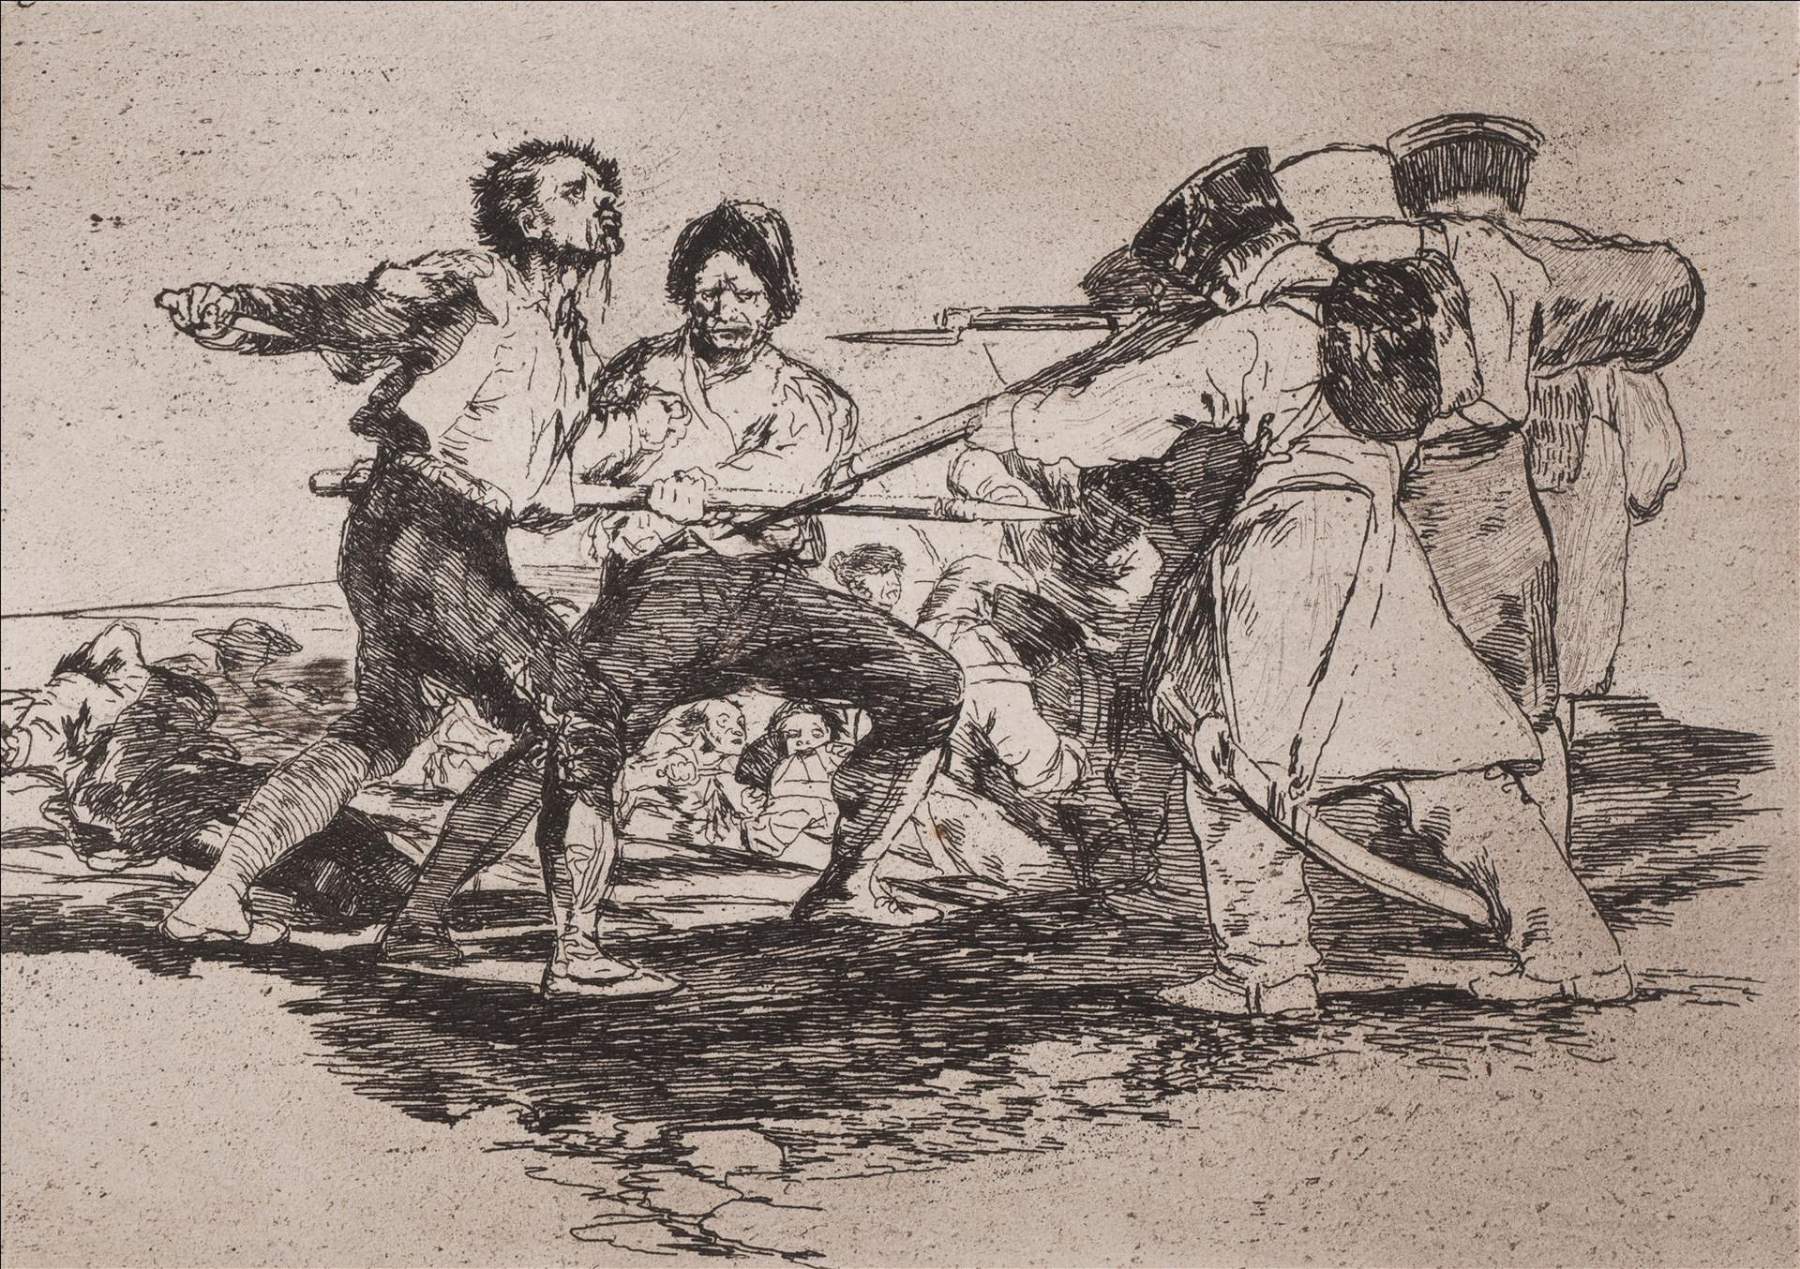 Une exposition au château de Rivoli sur les artistes en guerre, de Goya à l'Ukraine